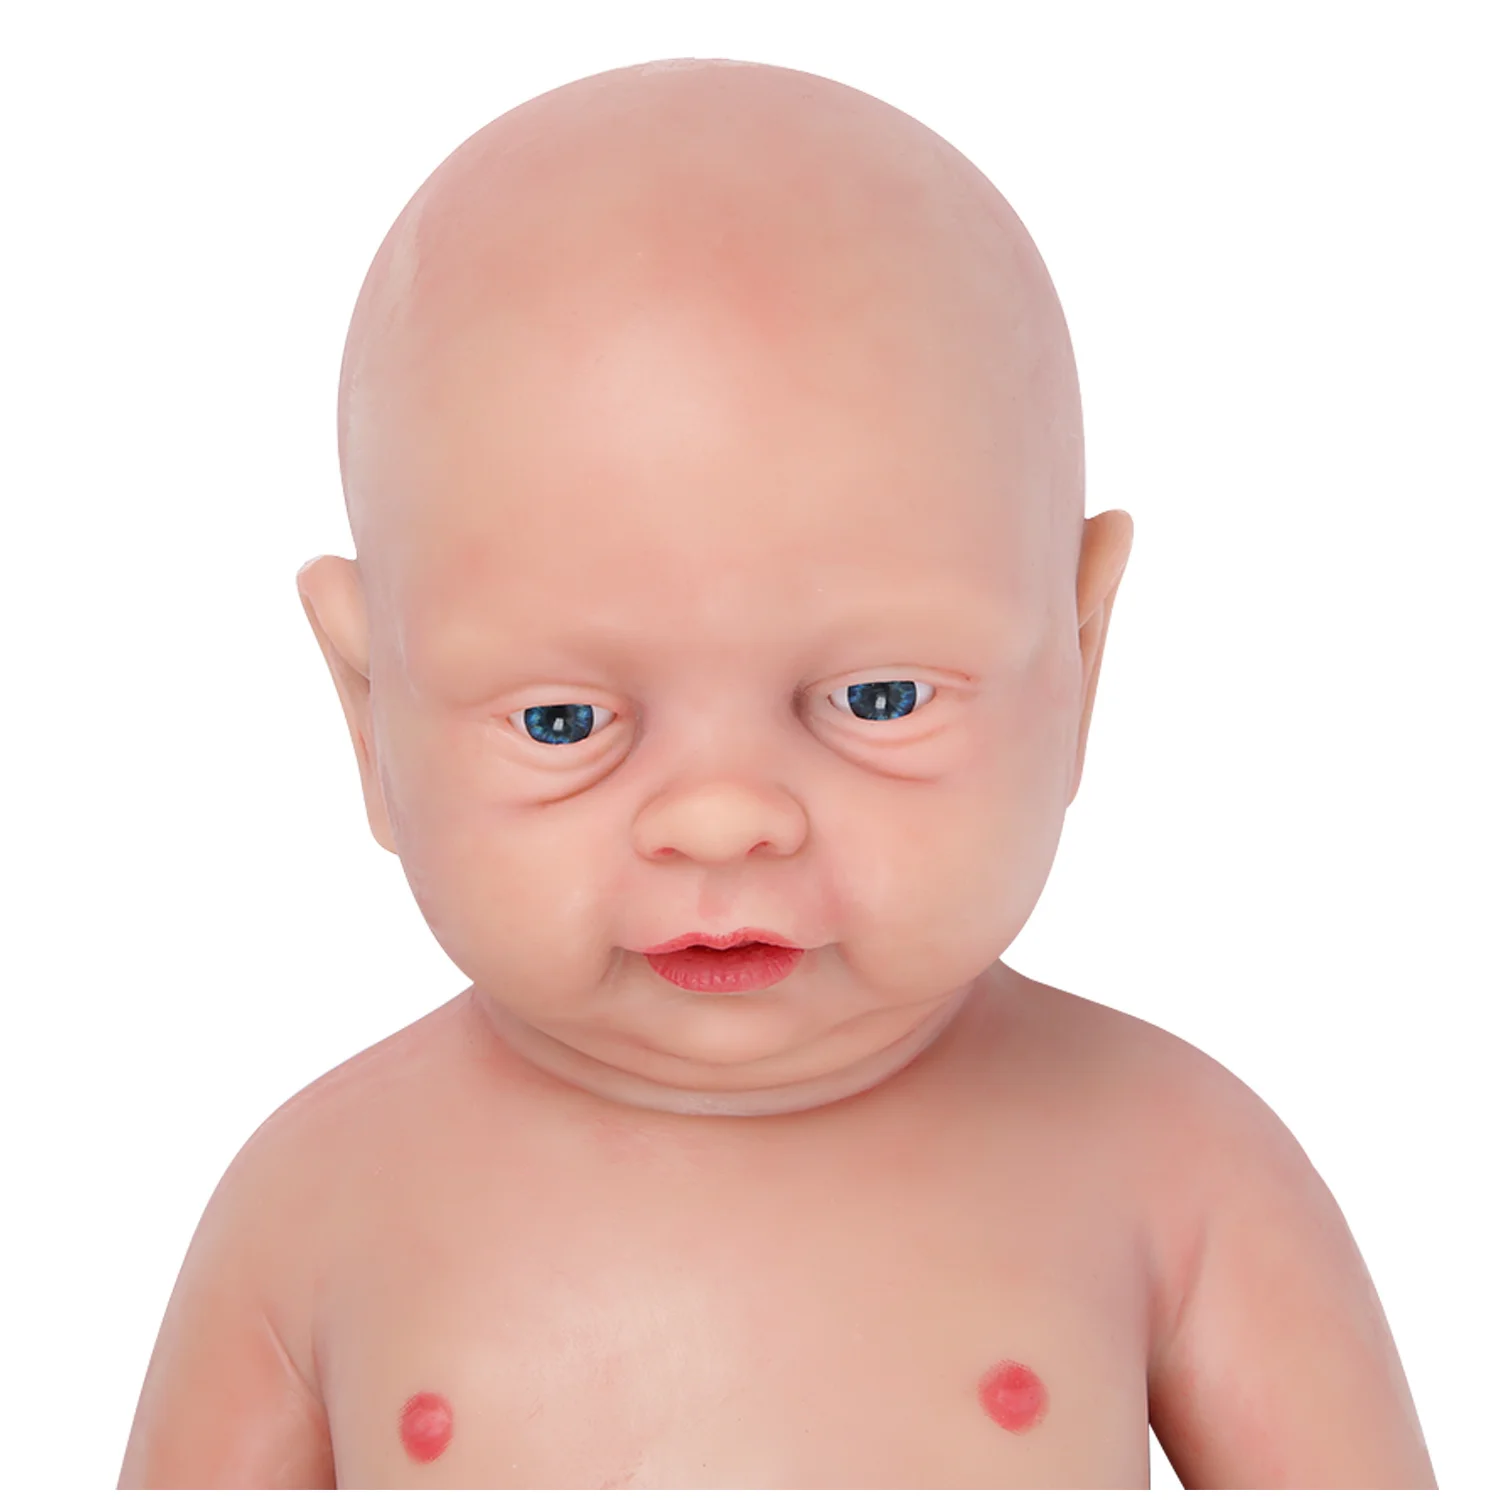 IVITA WB1502 18 Tommer 3800g Hud farve Realistisk Silicium Reborn Dukke Dreng Naturtro FULL BODY SILIKONE brinquedo øjne åbnede Legetøj